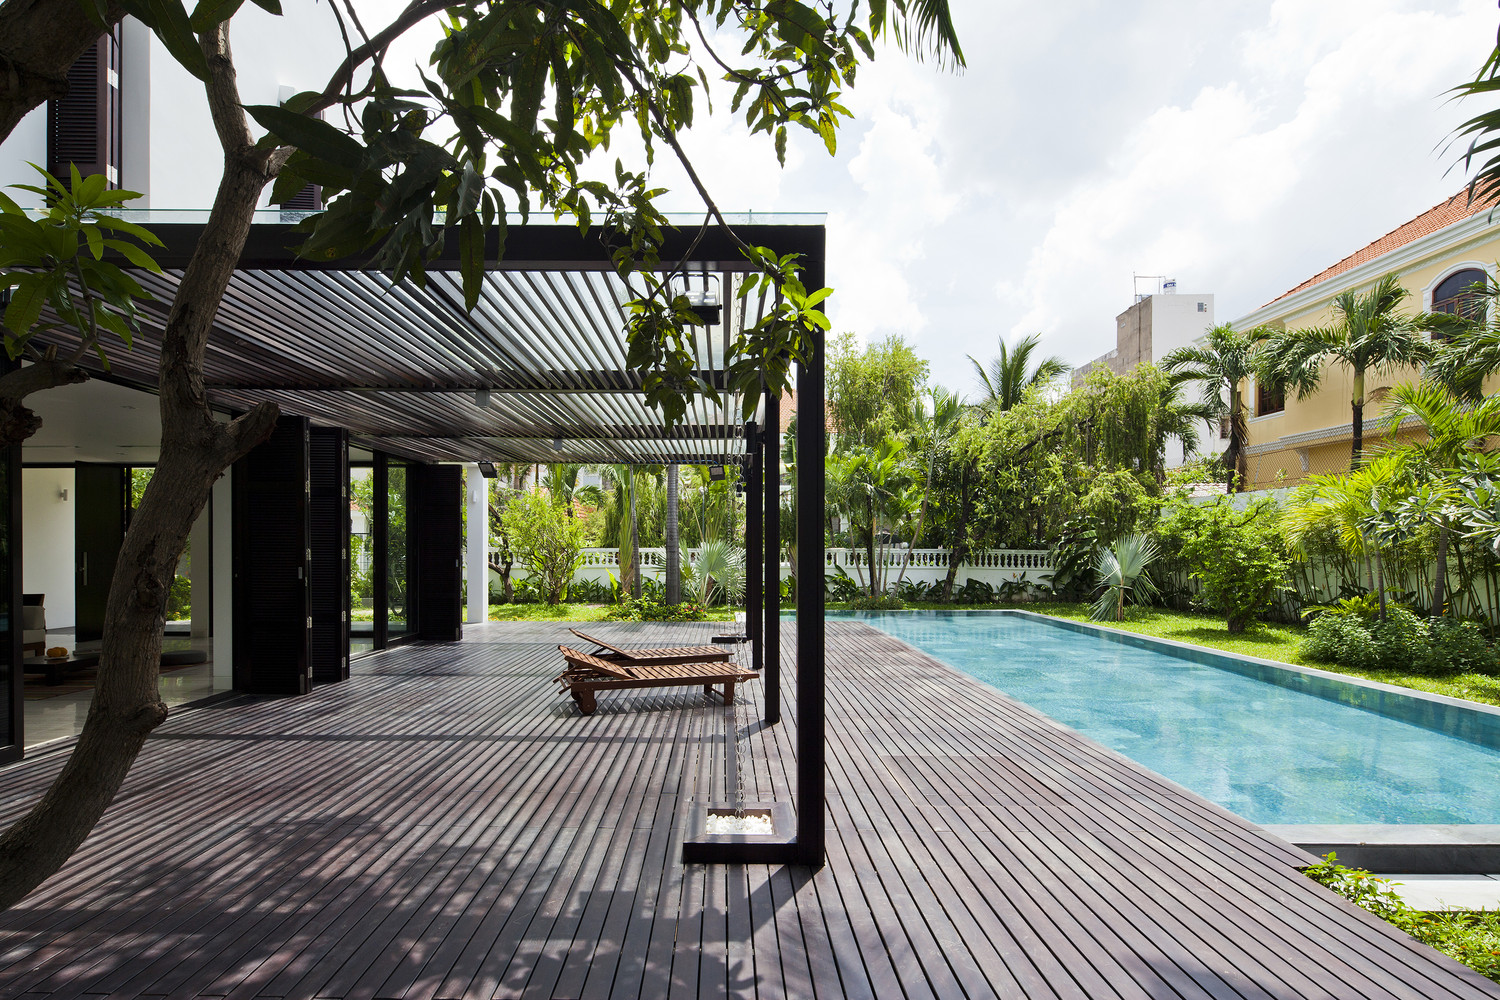 Kiến trúc sư thiết kế bể bơi như một phần mở rộng, kéo dài từ không sinh hoạt bên trong biệt thự. Hiên nhà lát gỗ có mái che là nơi thư giãn, tắm nắng lý tưởng.